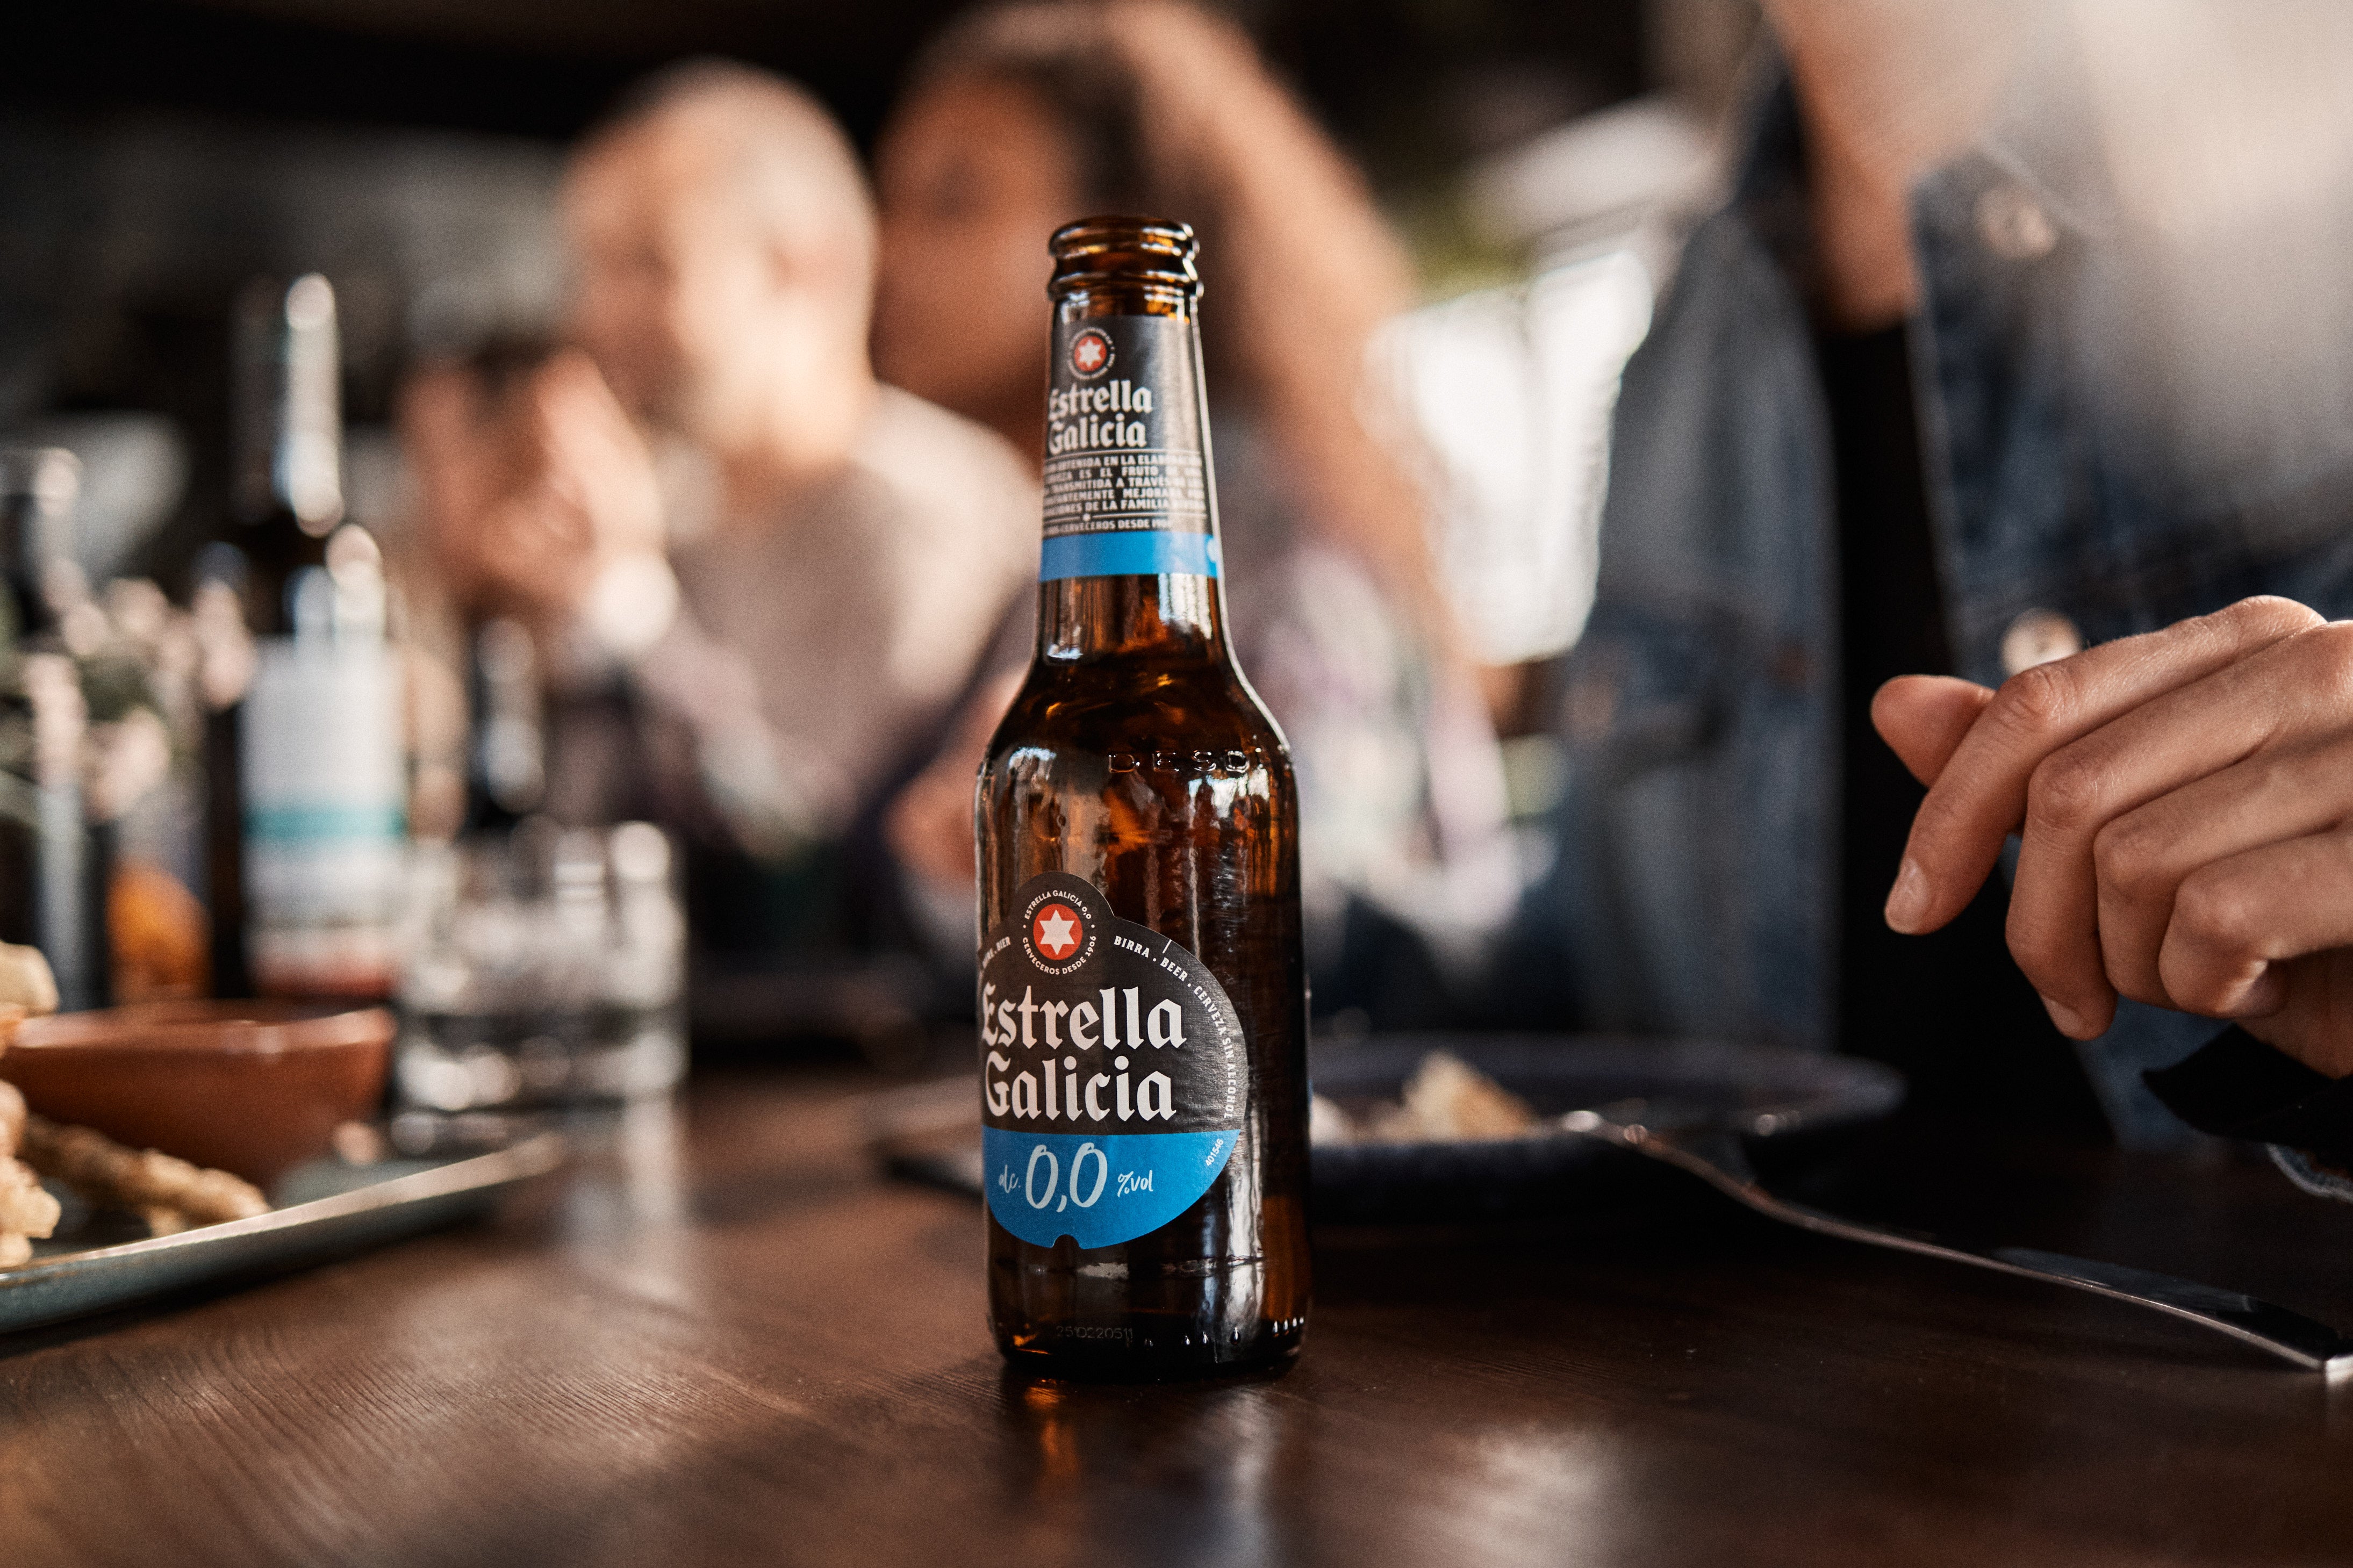 Bere fara alcool Estrella Galicia, 0.0%, Sticla, 6 x 0.33L